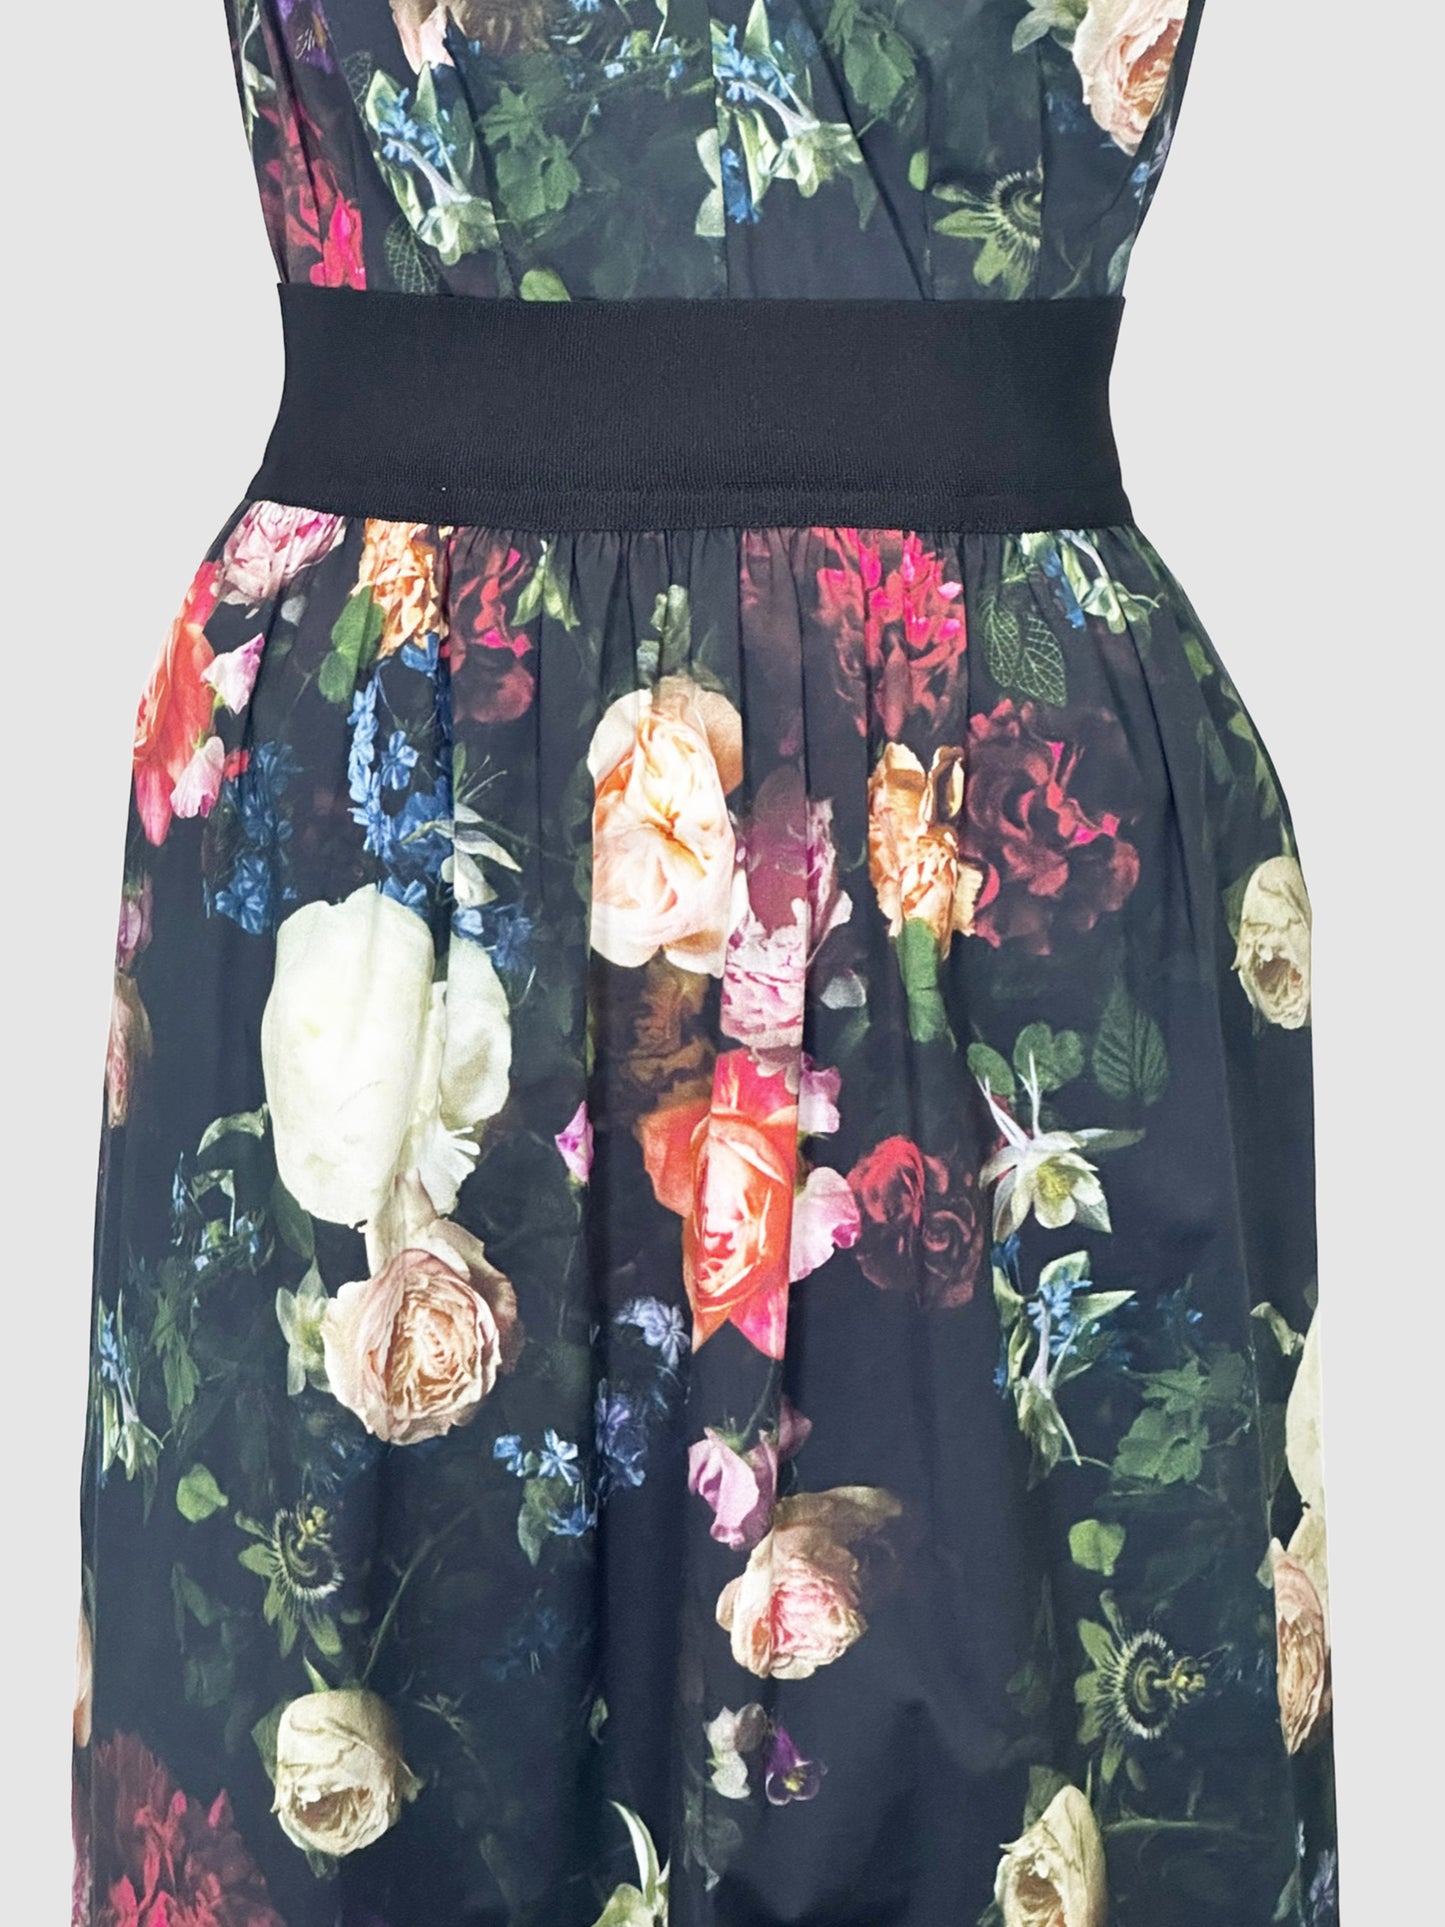 Floral V-Neck Dress - Size 12